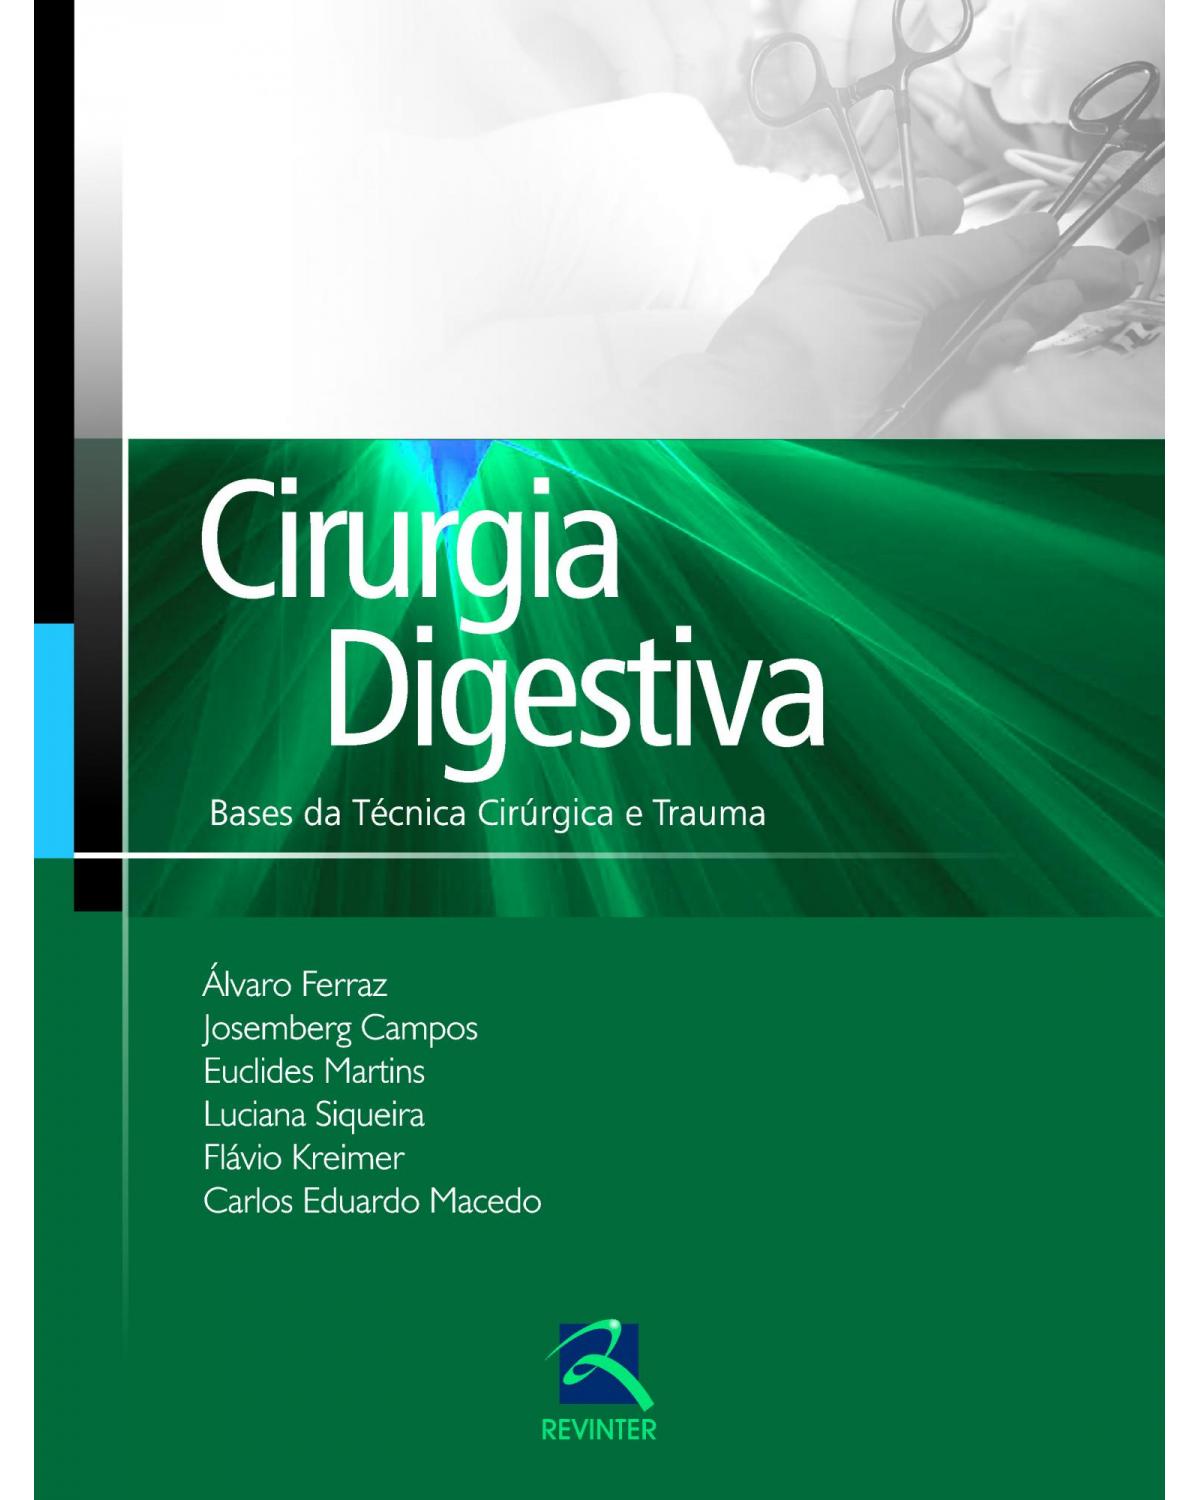 Cirurgia Digestiva - Bases da Técnica Cirúrgica e Trauma - 1ª Edição | 2016